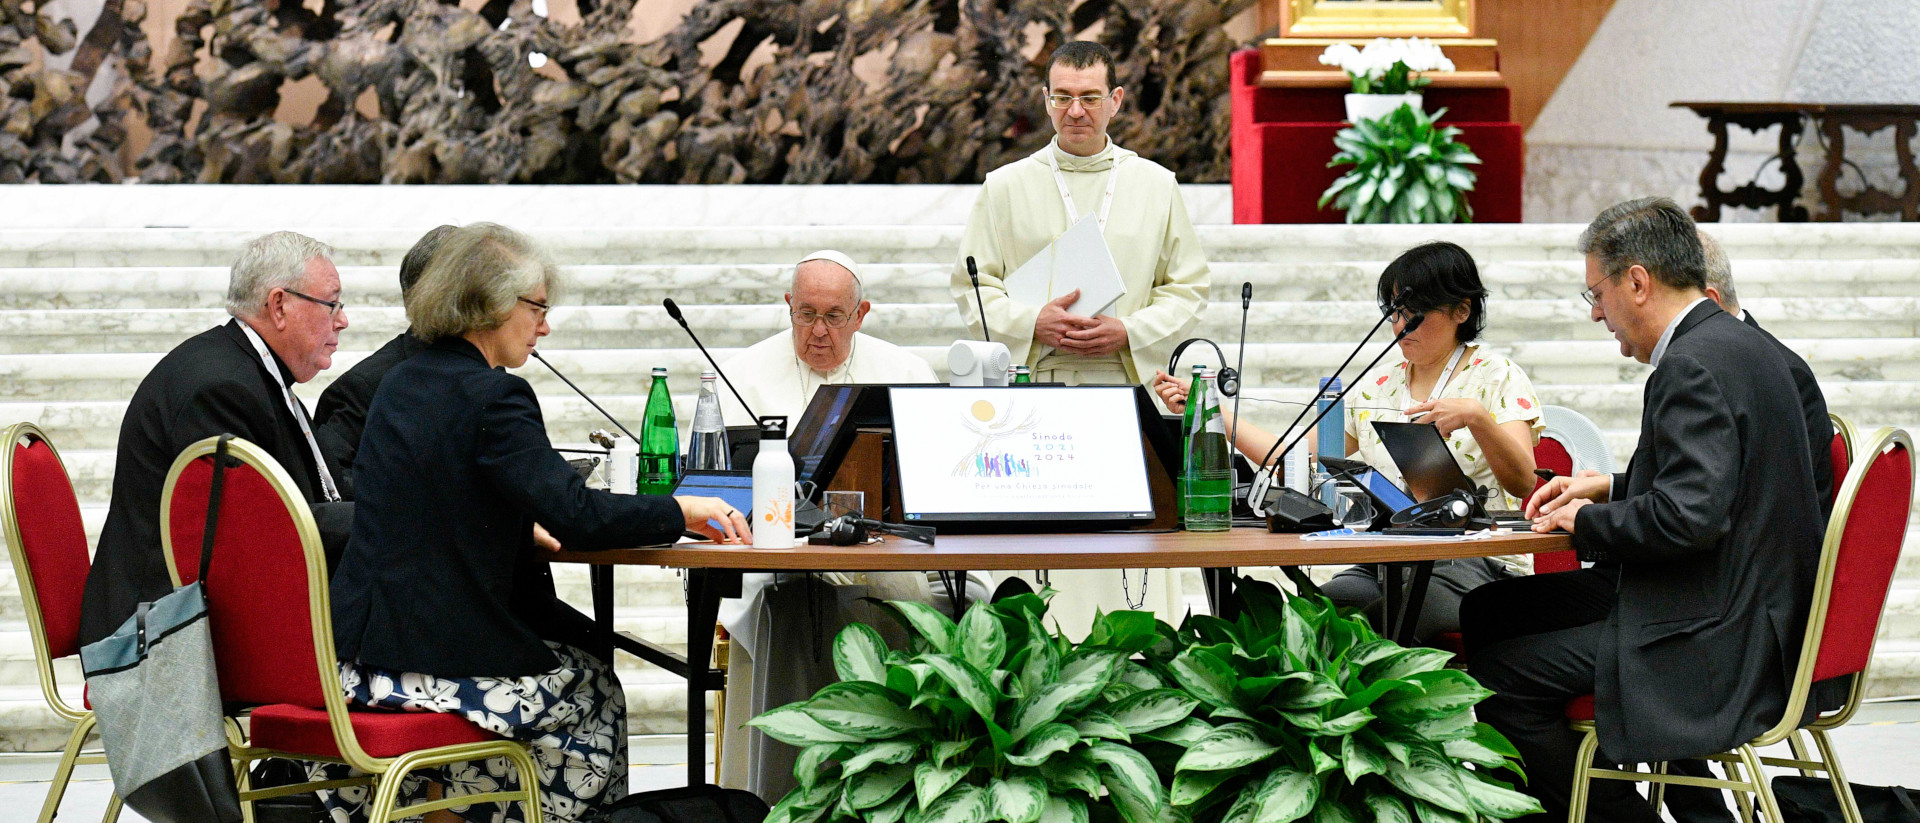 Papst Franziskus im Gespräch am Tisch bei der Weltsynode, 16. Oktober 2023 im Vatikan.